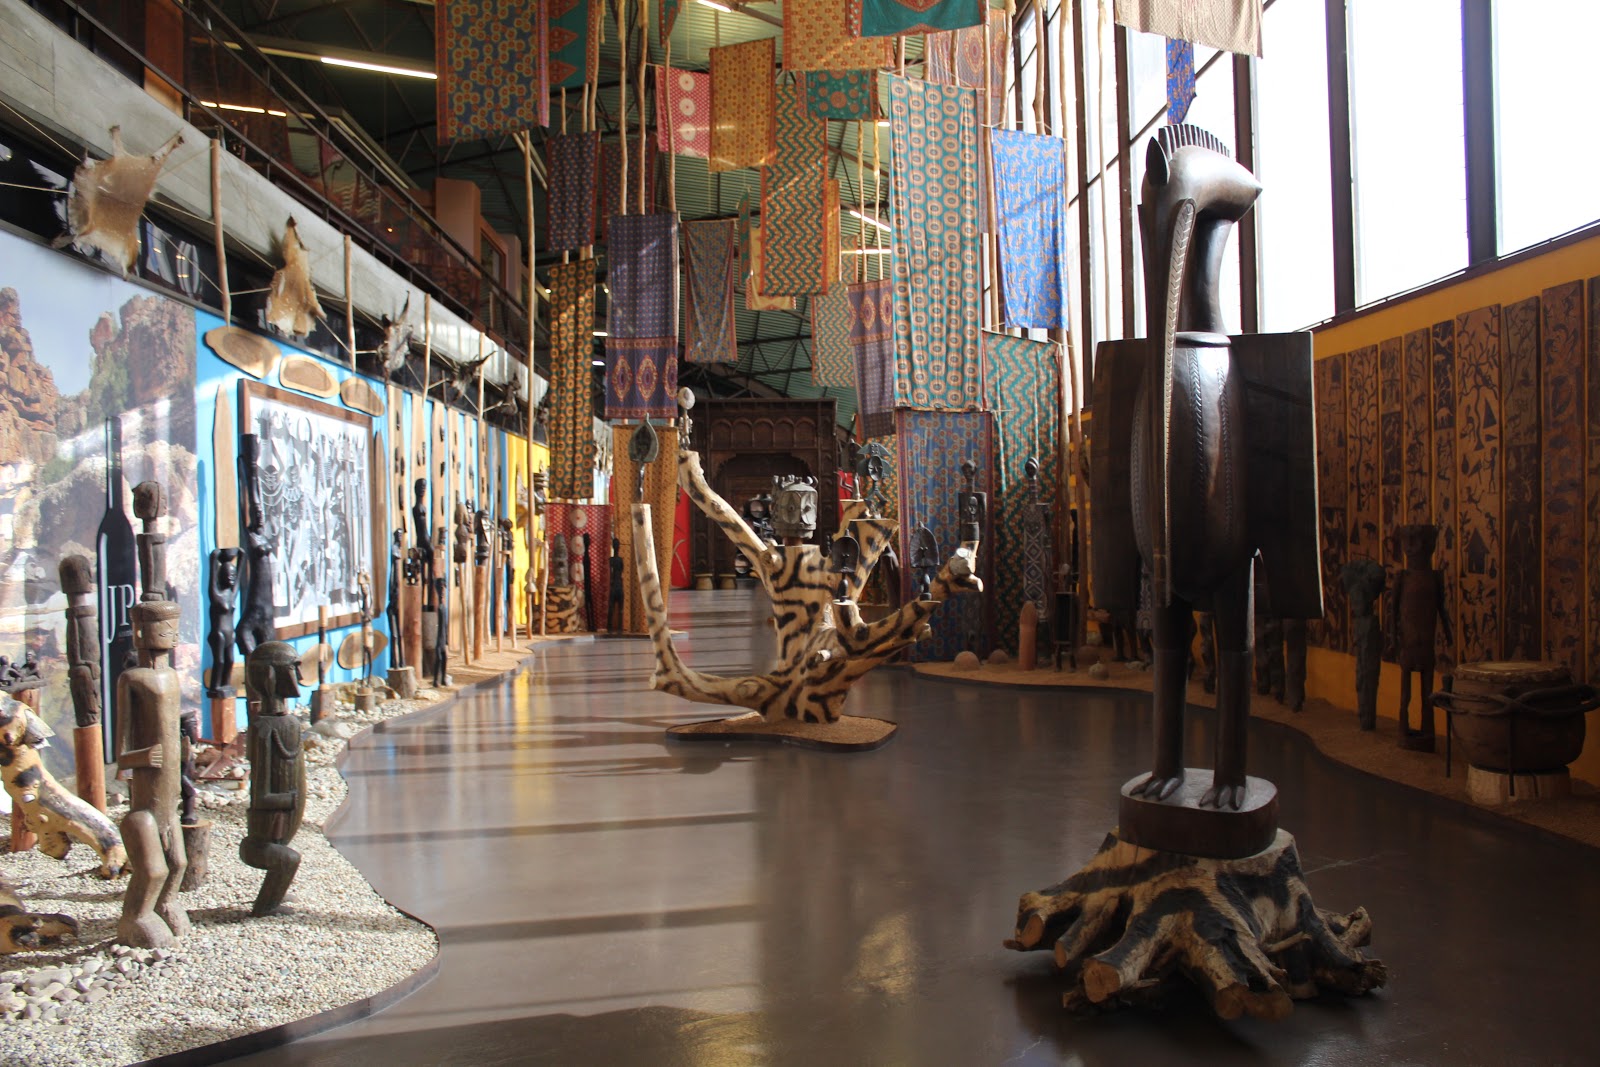 Artefatos e esculturas africanas na sede da Bacalhôa, vinícola de Portugal -BVML